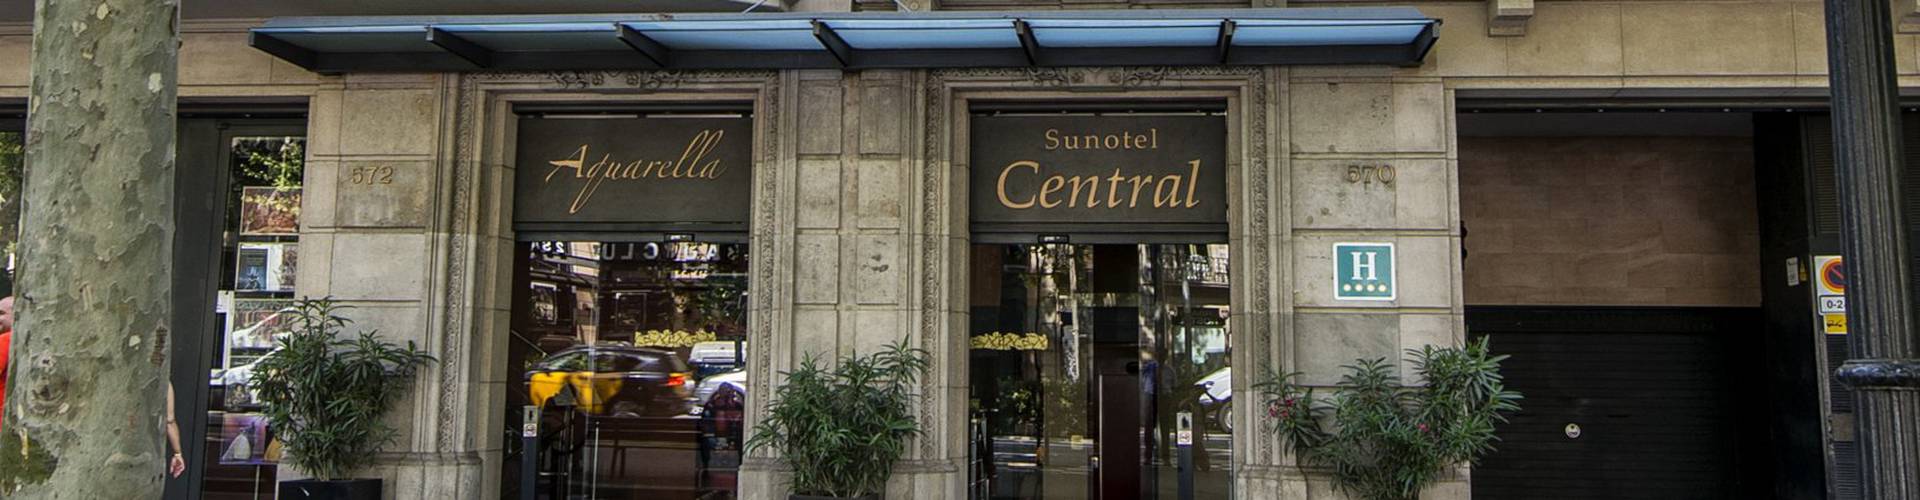 Sunotel - Barcelona - Sunotel Central